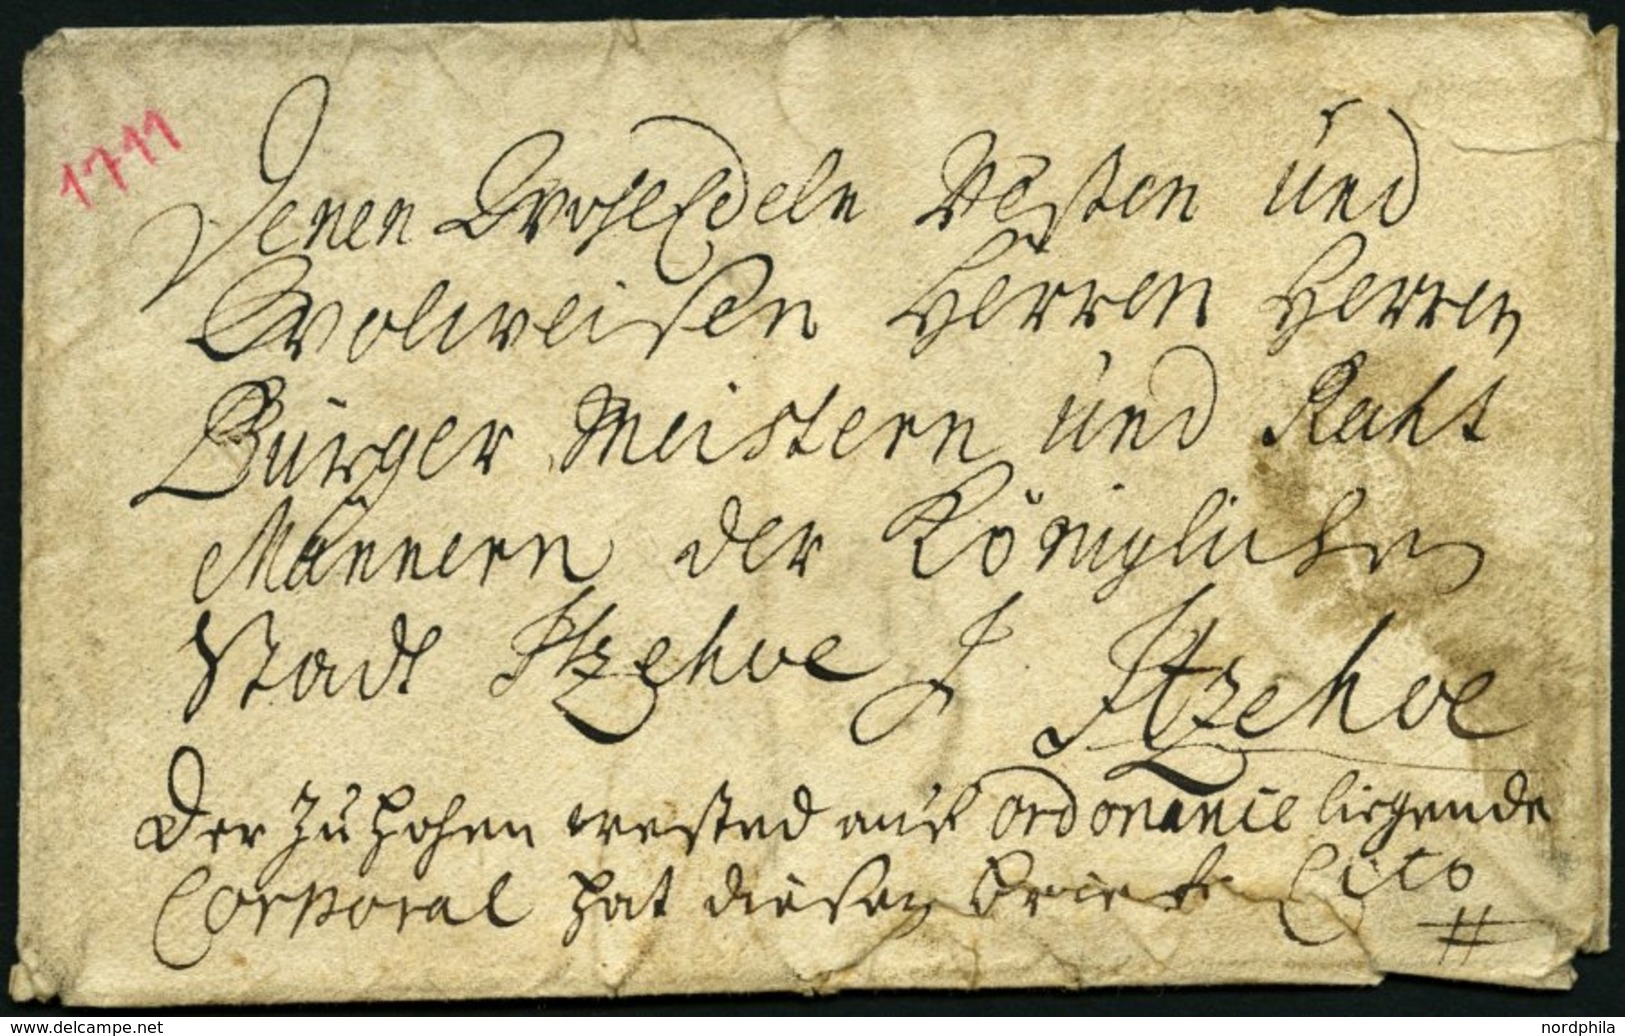 SCHLESWIG-HOLSTEIN - ALTBRIEFE 1711, Cito-Briefhülle Aus Itzehoe An Die Herren Bürgermeister Und Ratsmänner Der Königl.  - Vorphilatelie